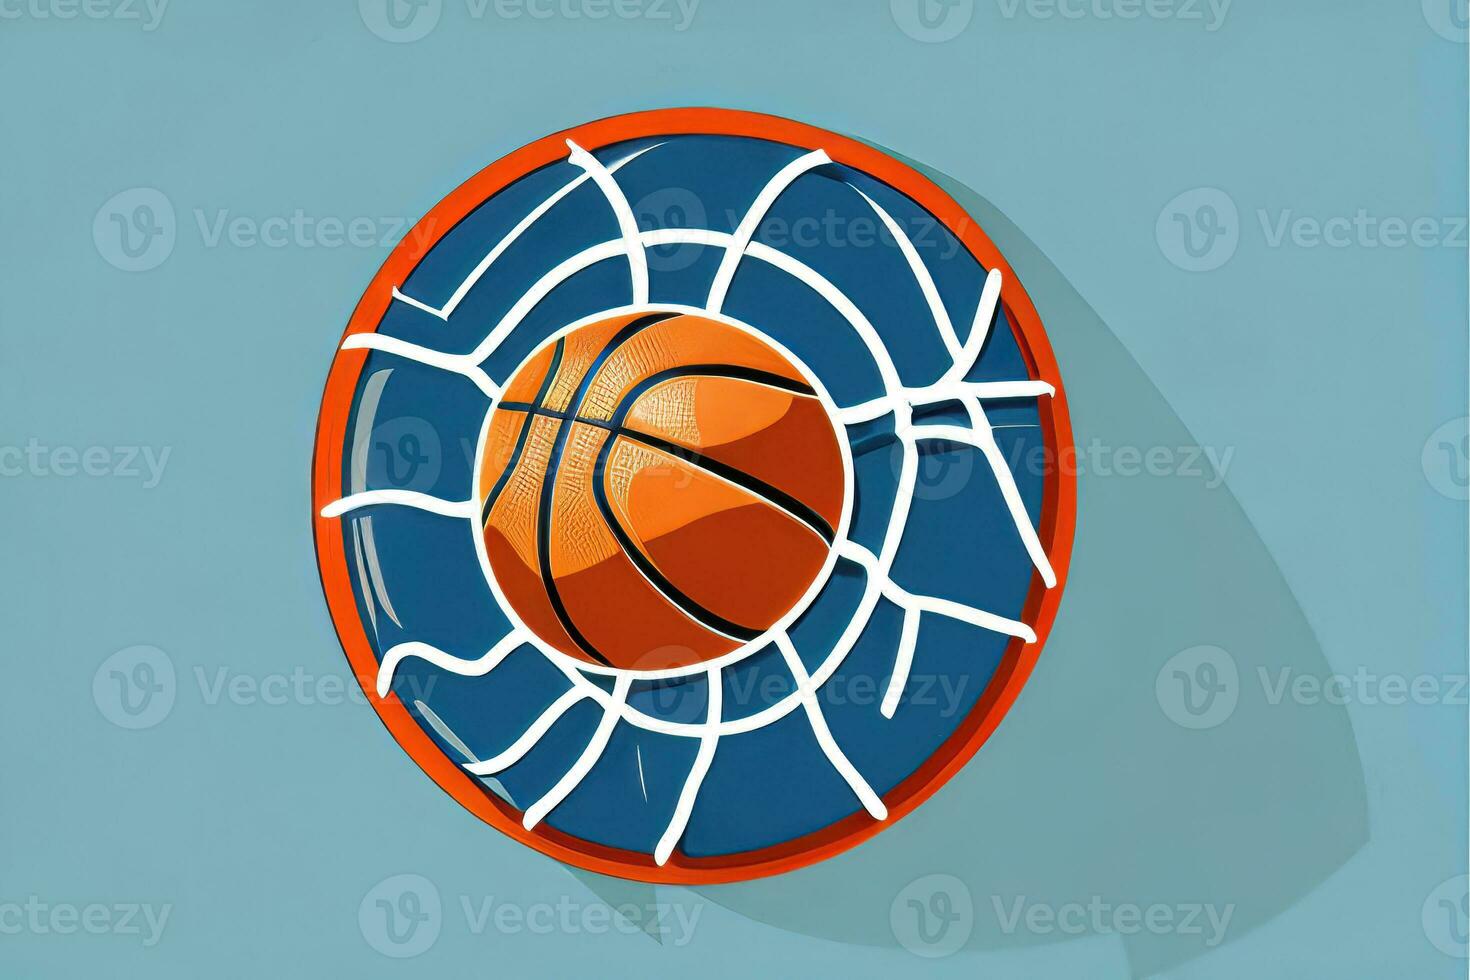 el Arte de atletismo - resumen baloncesto ilustración foto